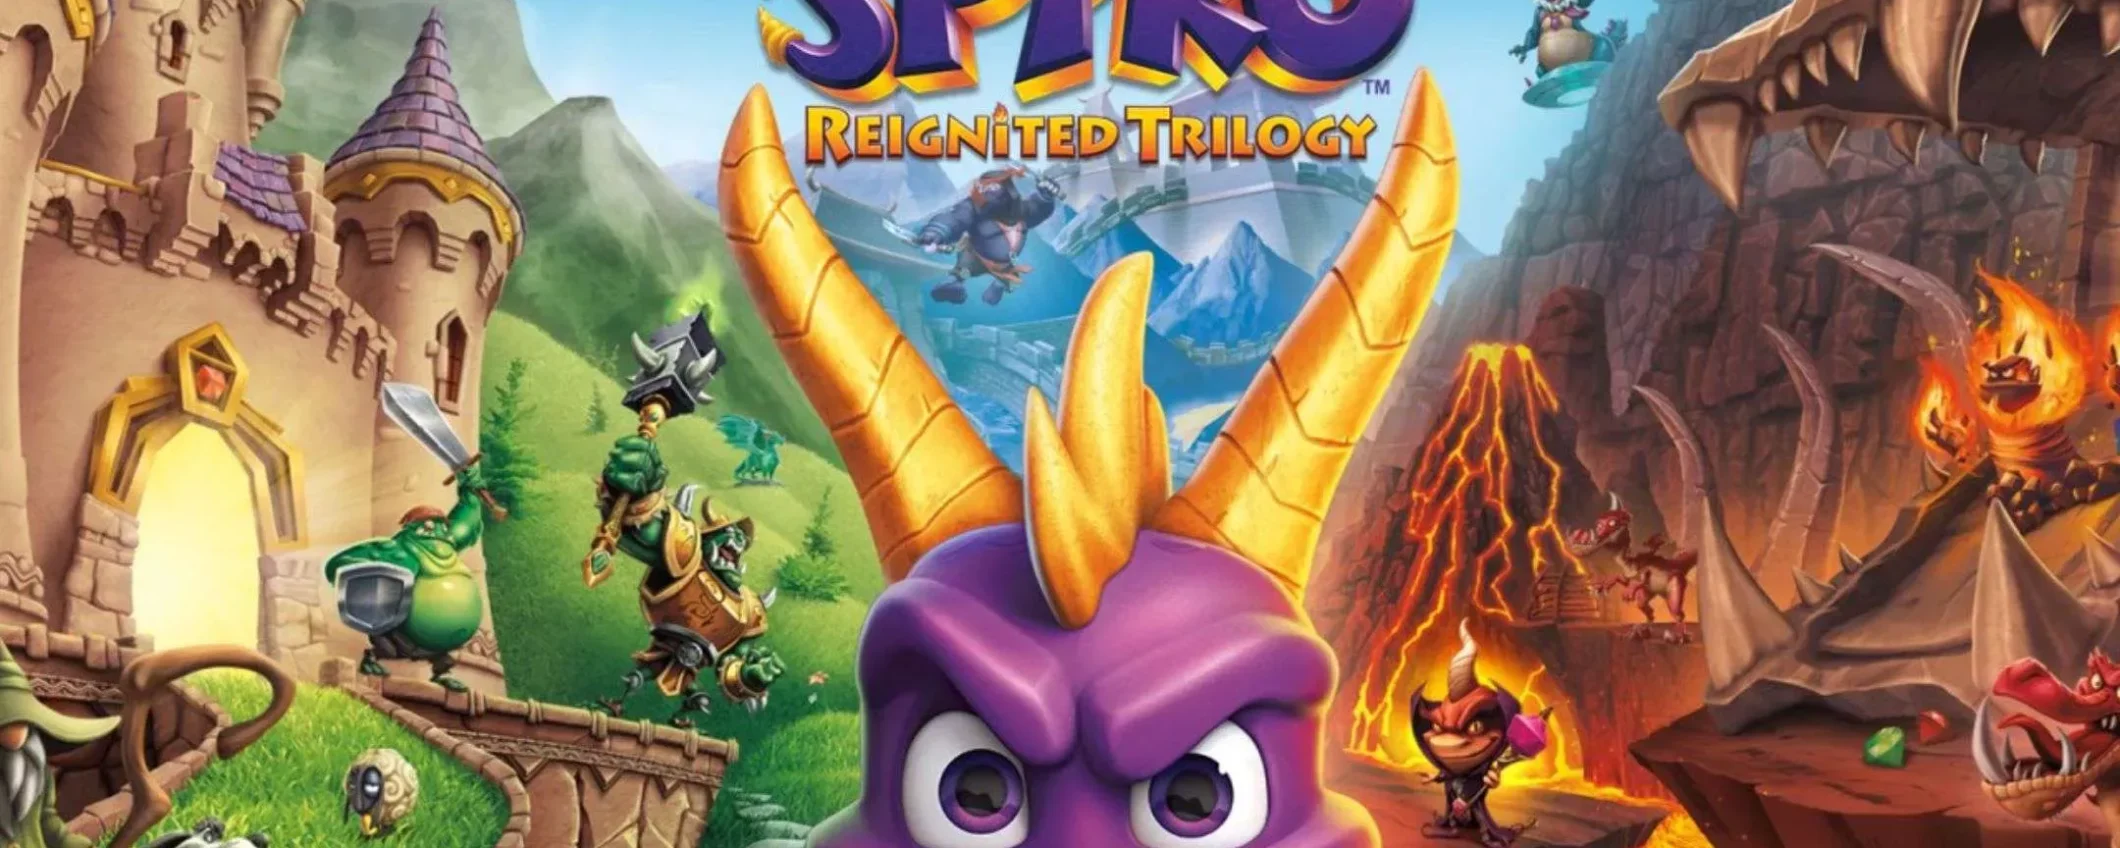 Spyro Reignited Trilogy (PS4): oggi costa solo 24,90€ su Amazon